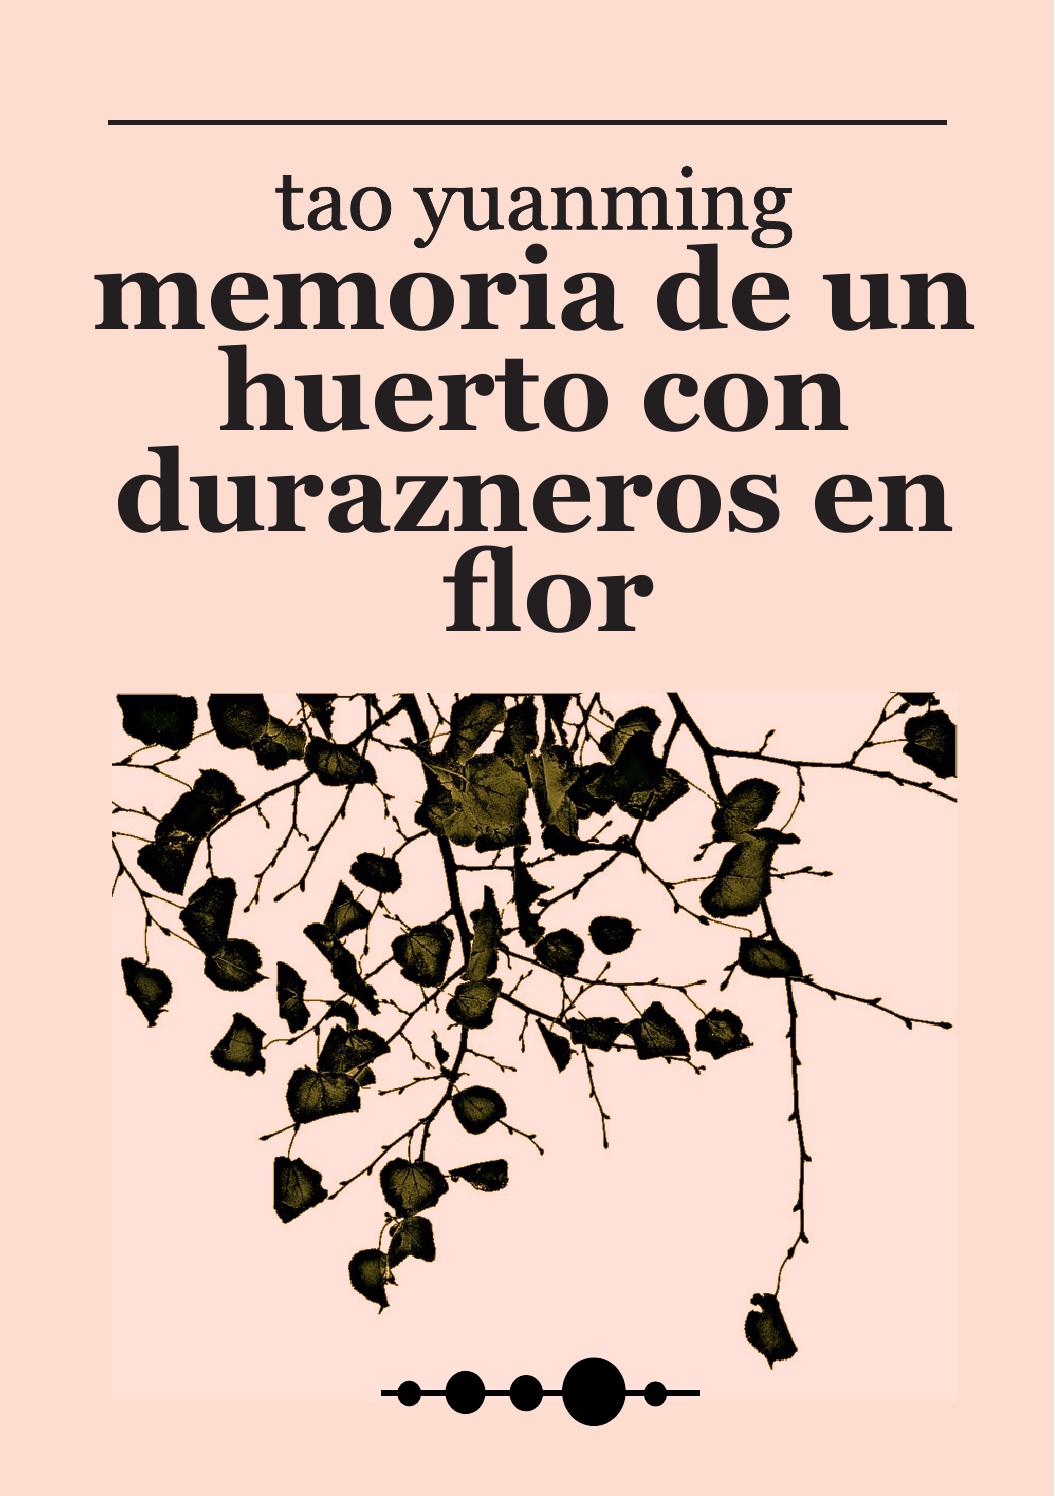 Memoria de un huerto con durazneros en flor.